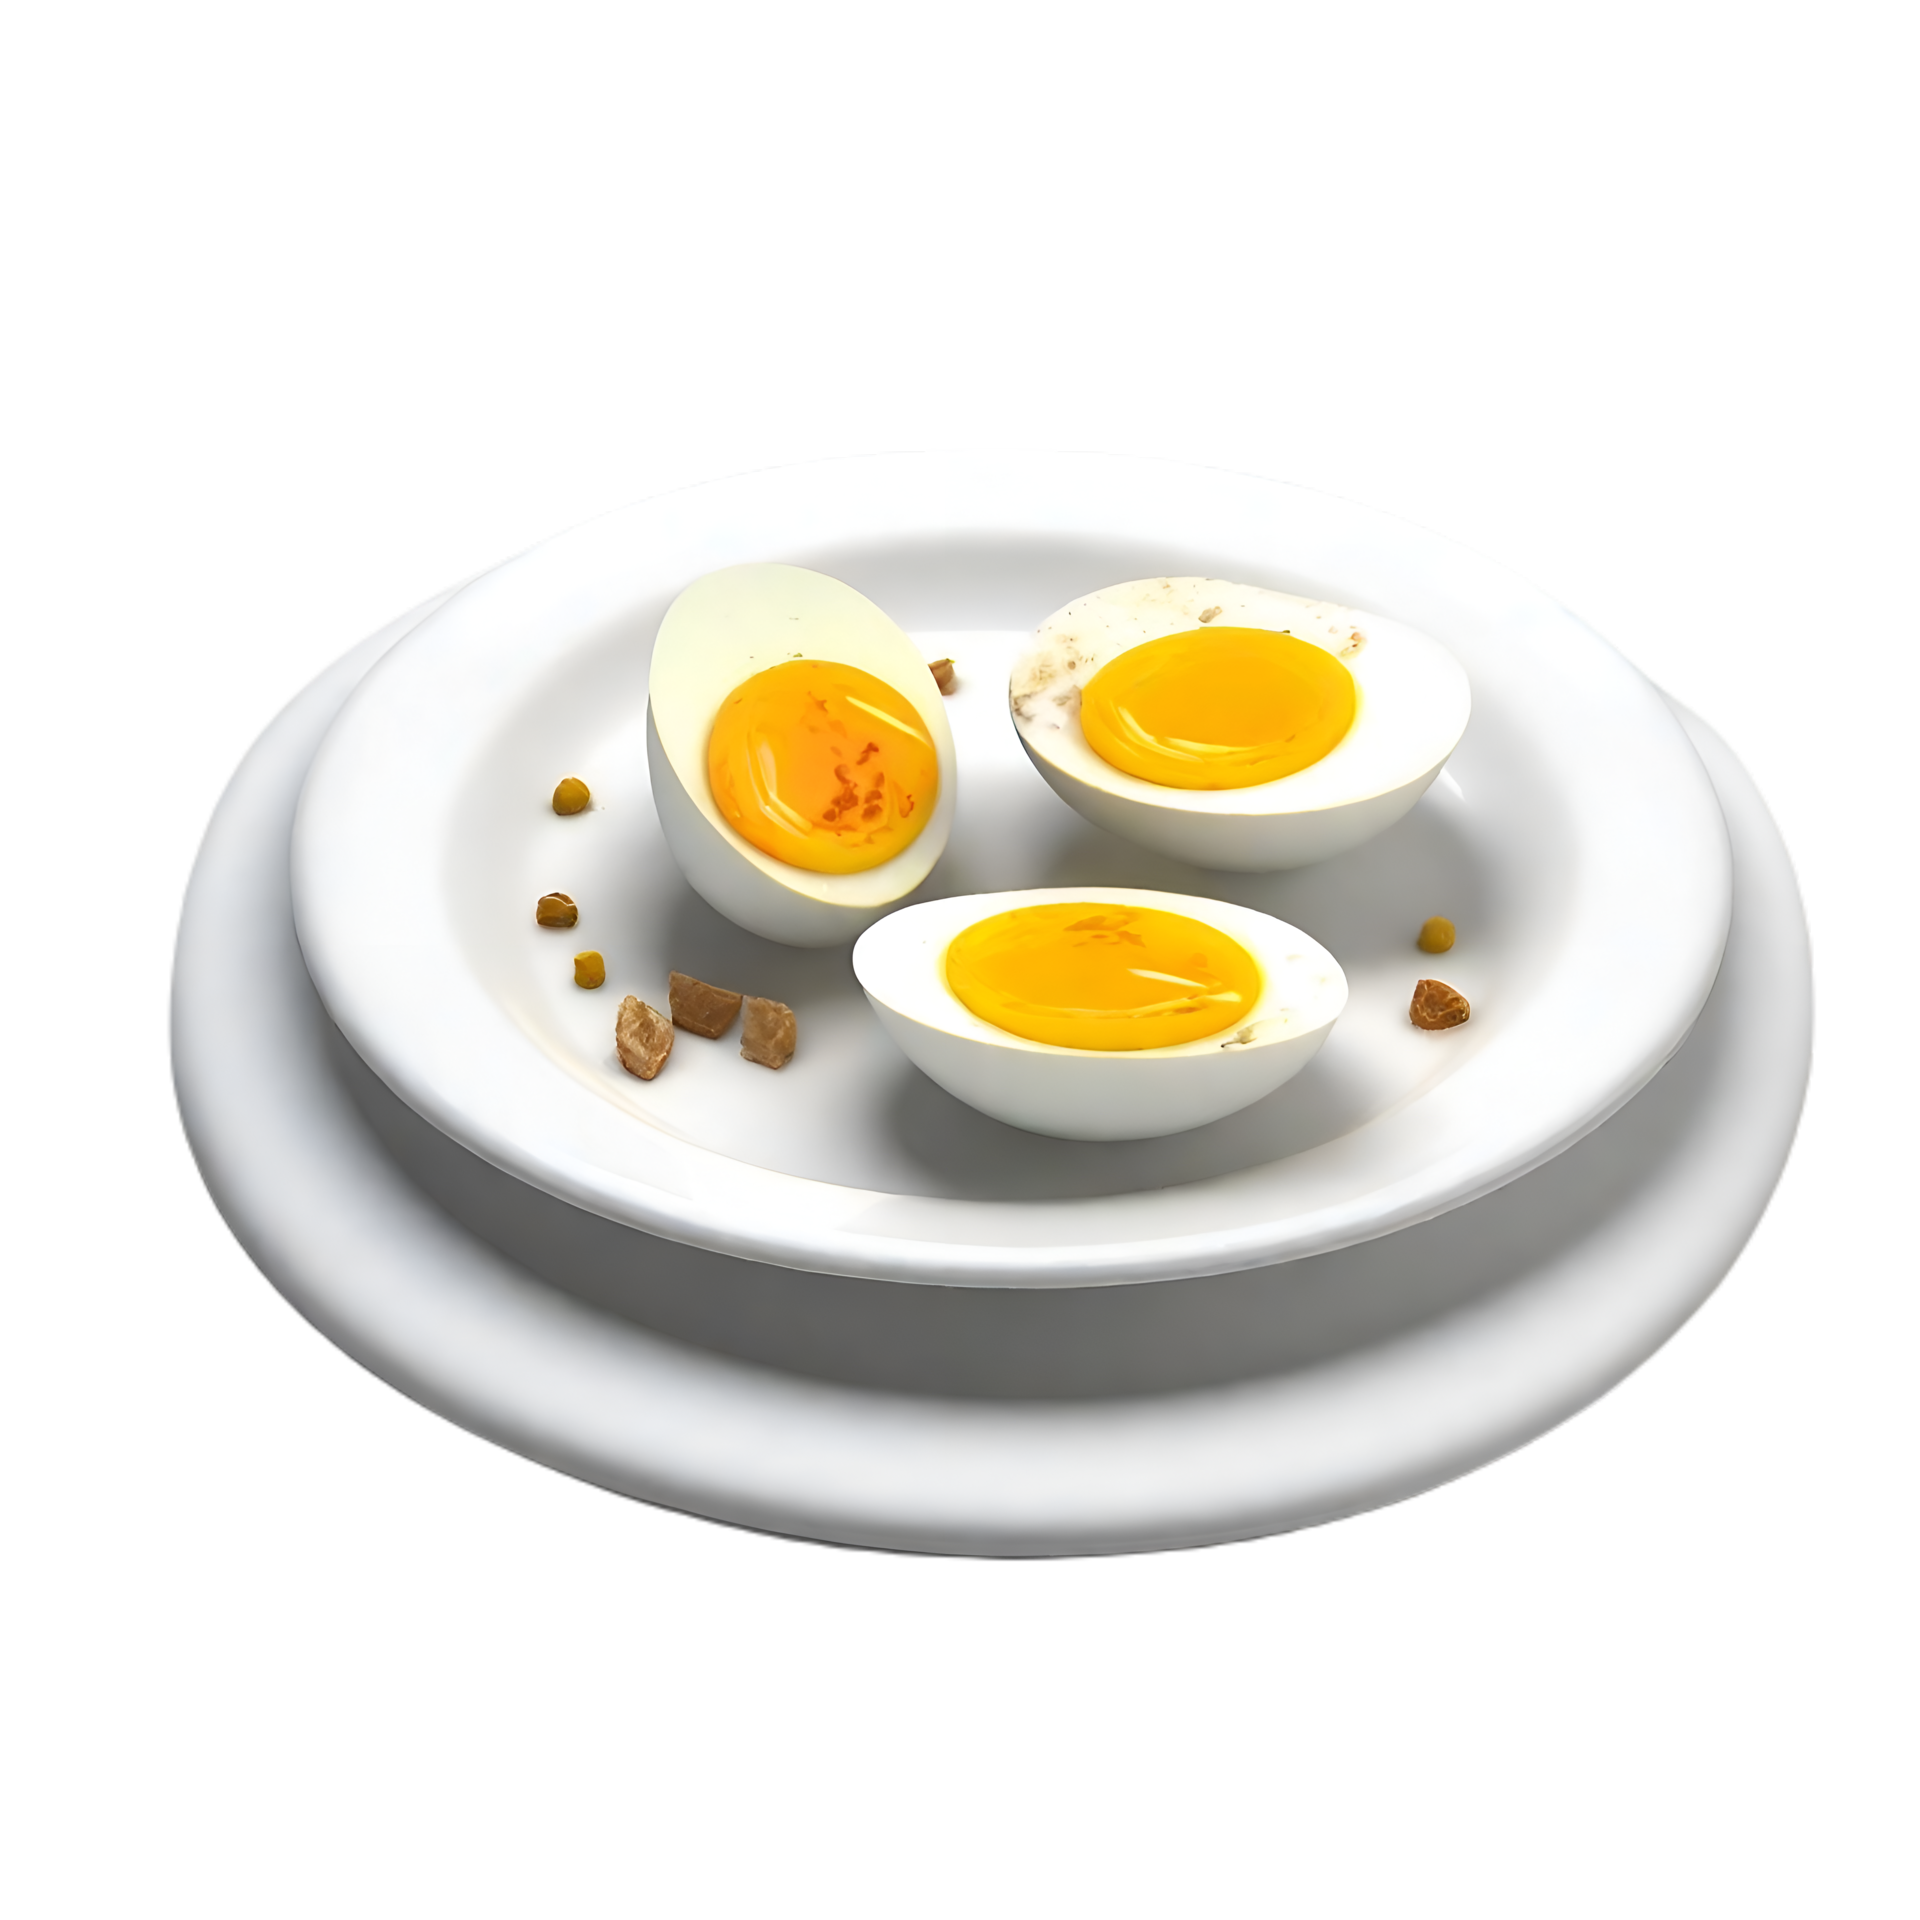 Premium AI Image  Boiled eggs are delicious